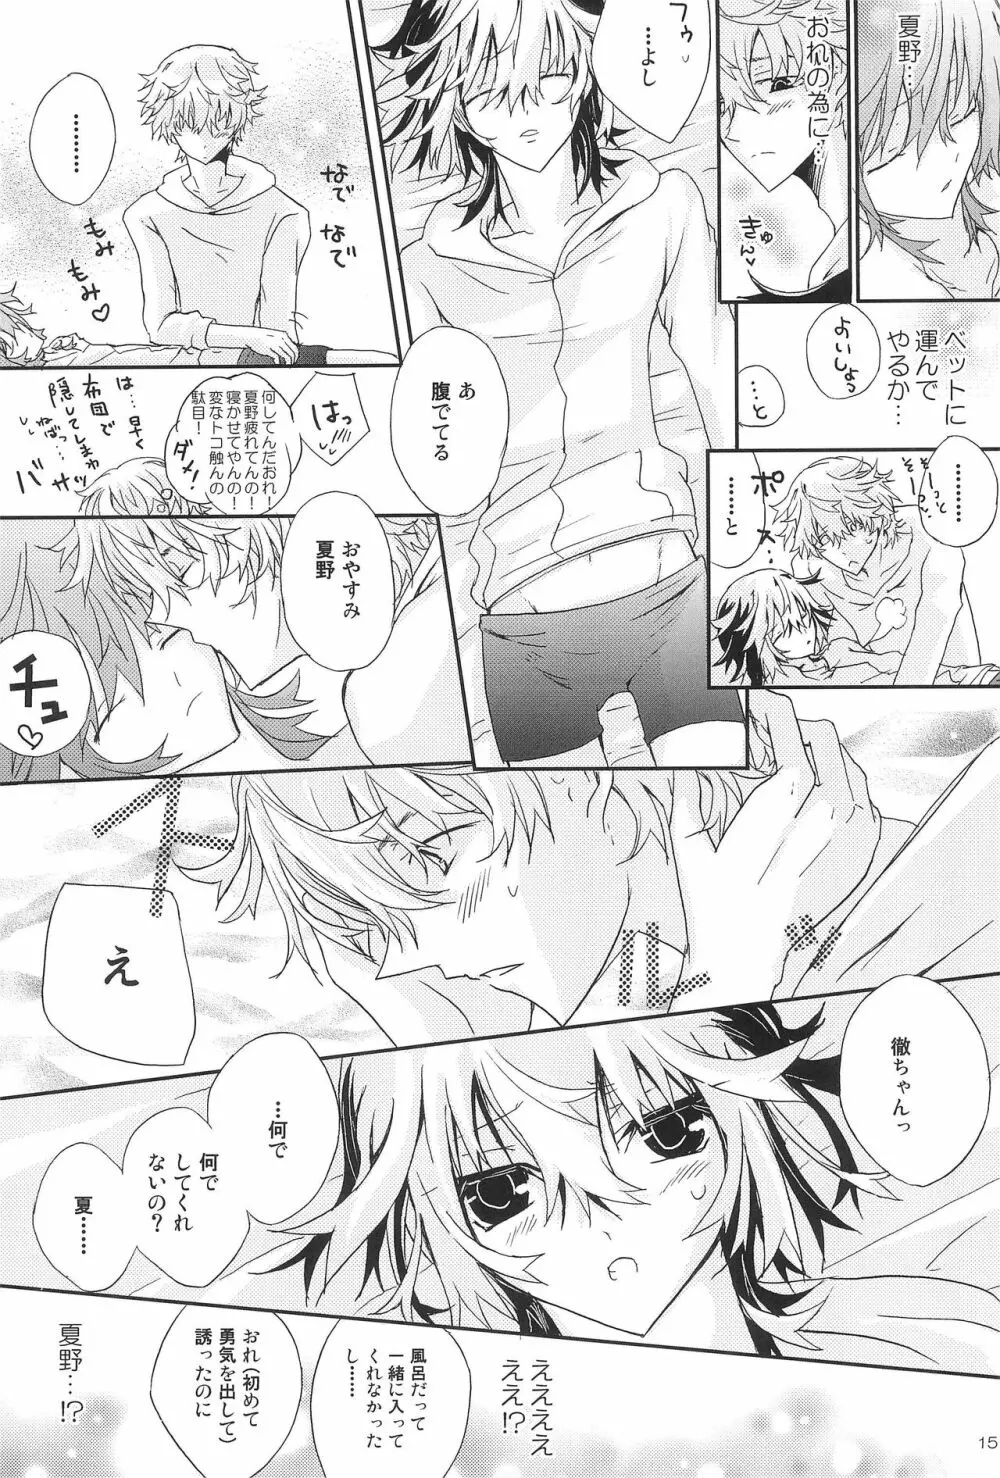 Shiki-hon 18 15ページ